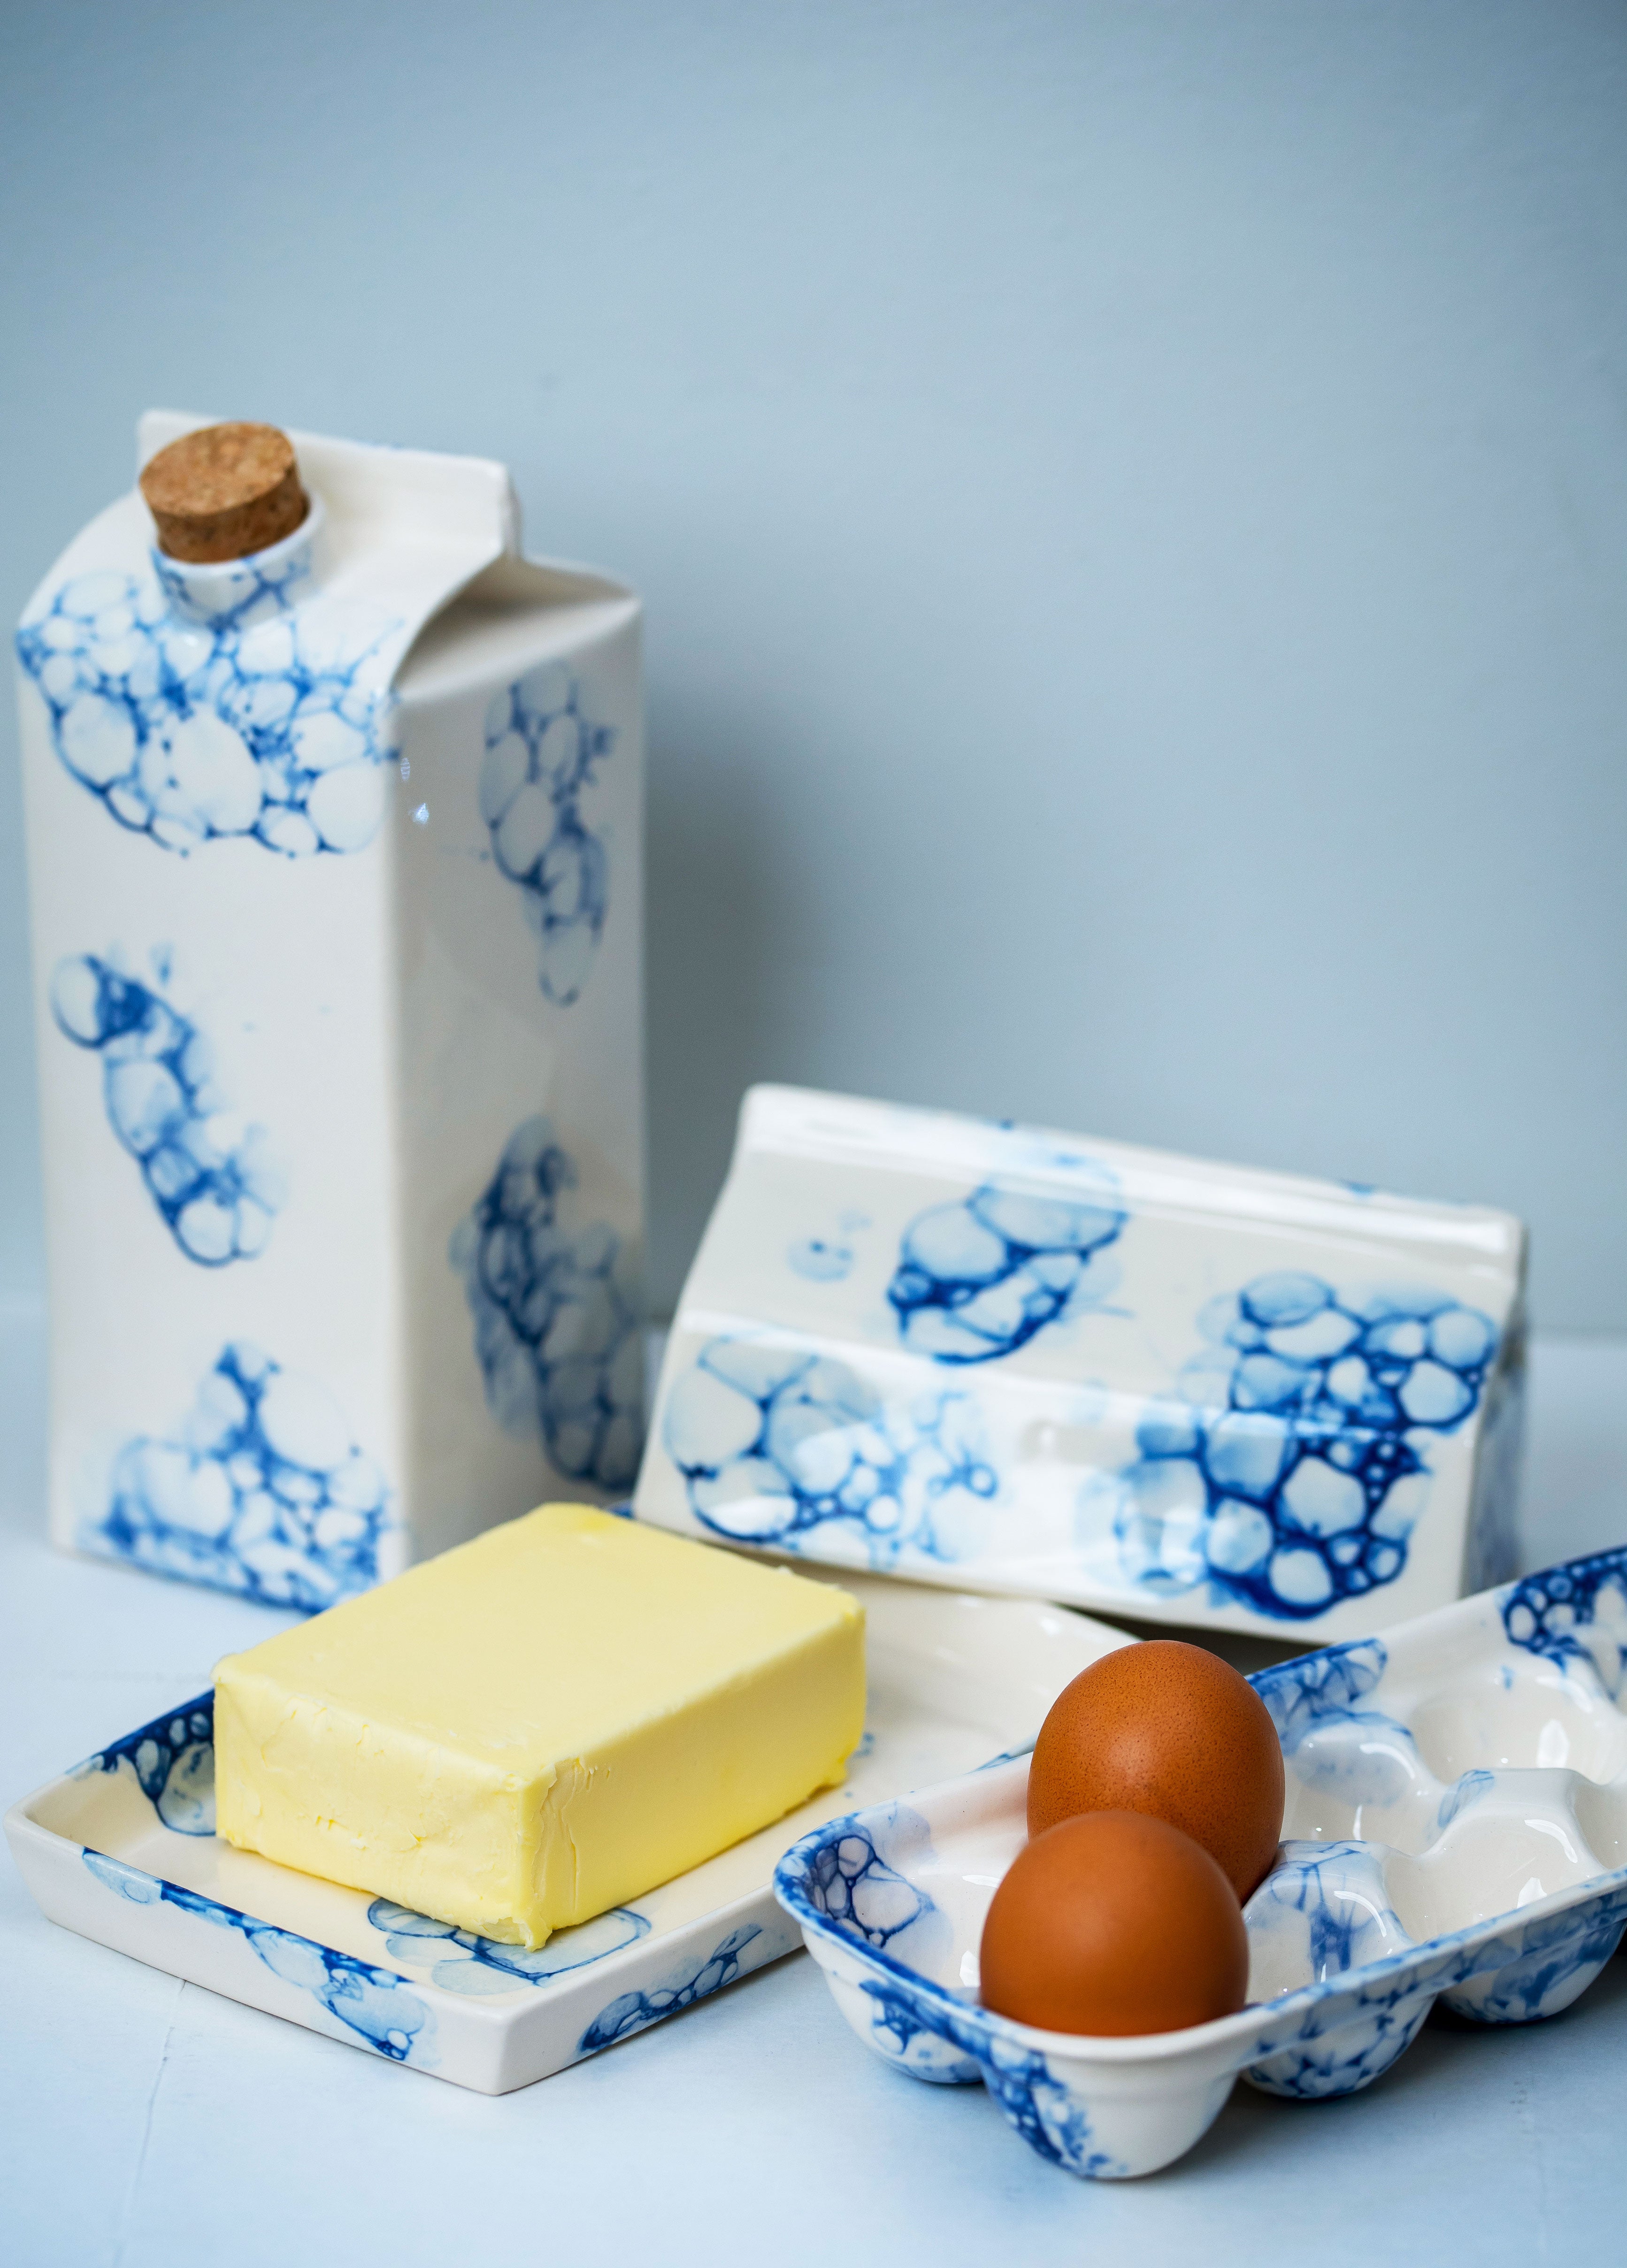 Porcelain butter dish carton replica - Blue bubbles - ZLATNAporcelain